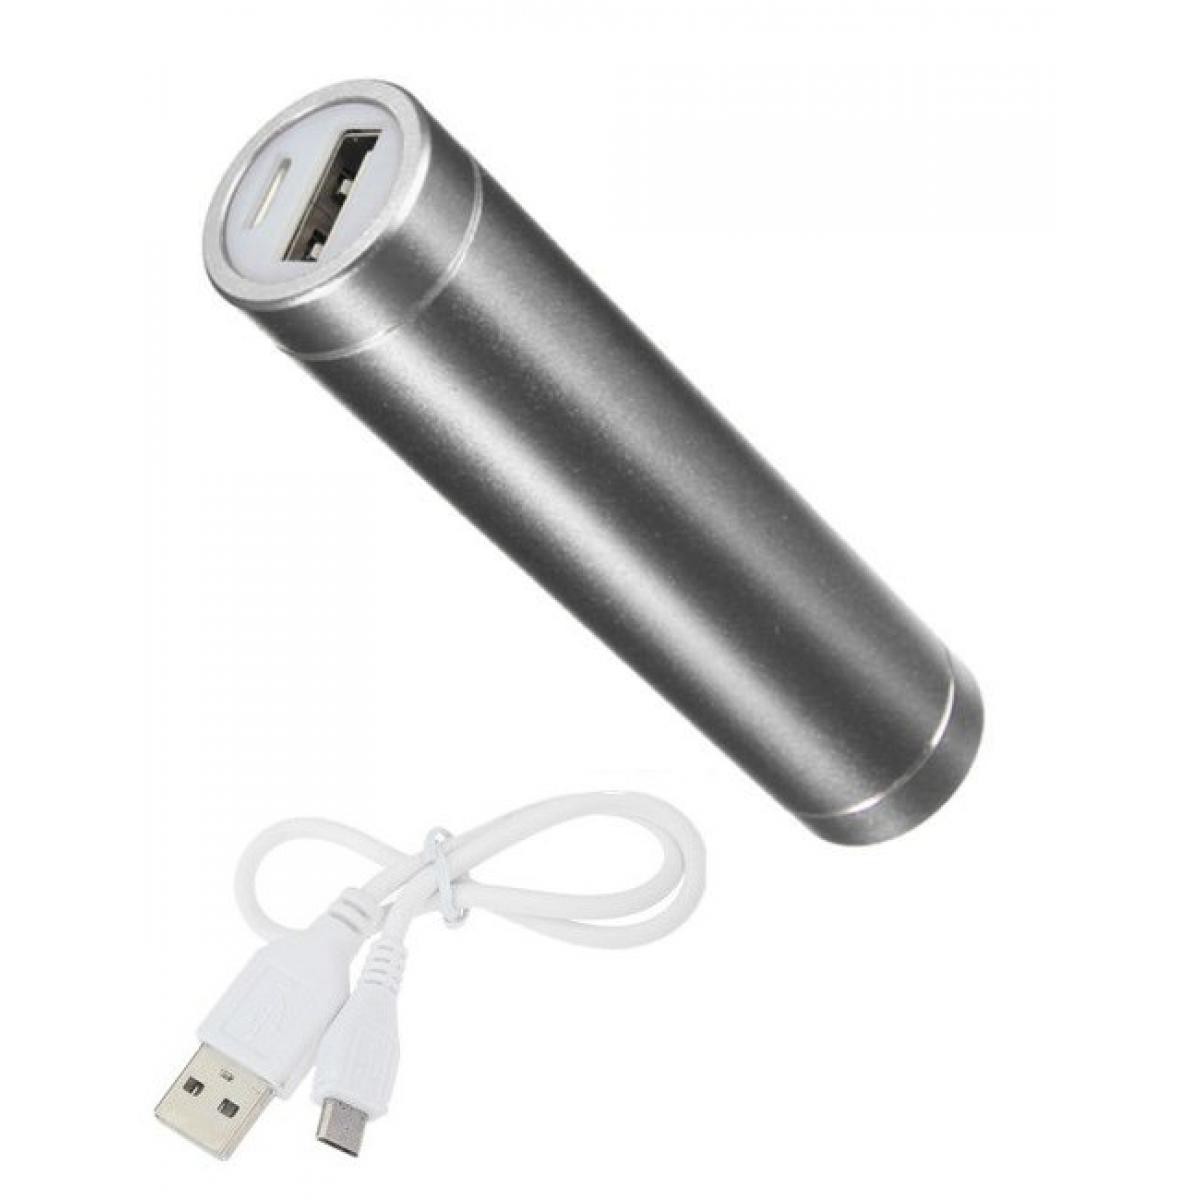 Shot - Batterie Chargeur Externe pour XIAOMI Mi Note 10 Pro Power Bank 2600mAh avec Cable USB/Mirco USB Secours Telephone (ARGENT) - Chargeur secteur téléphone